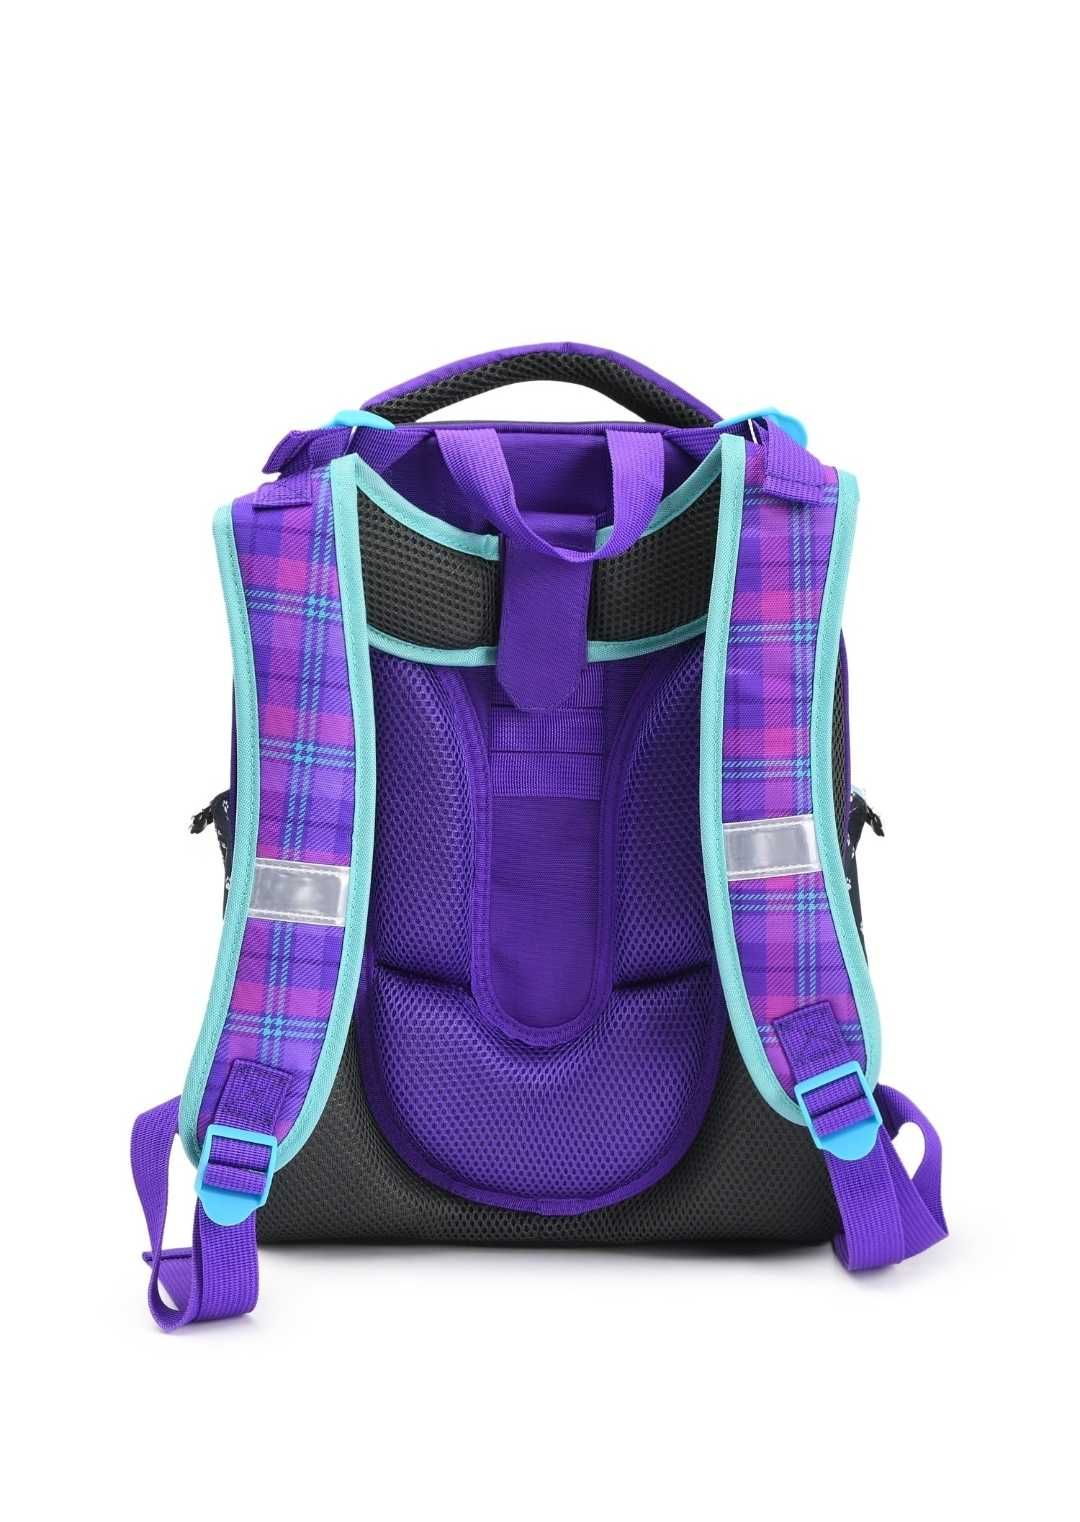 Новый фирменный школьный рюкзак